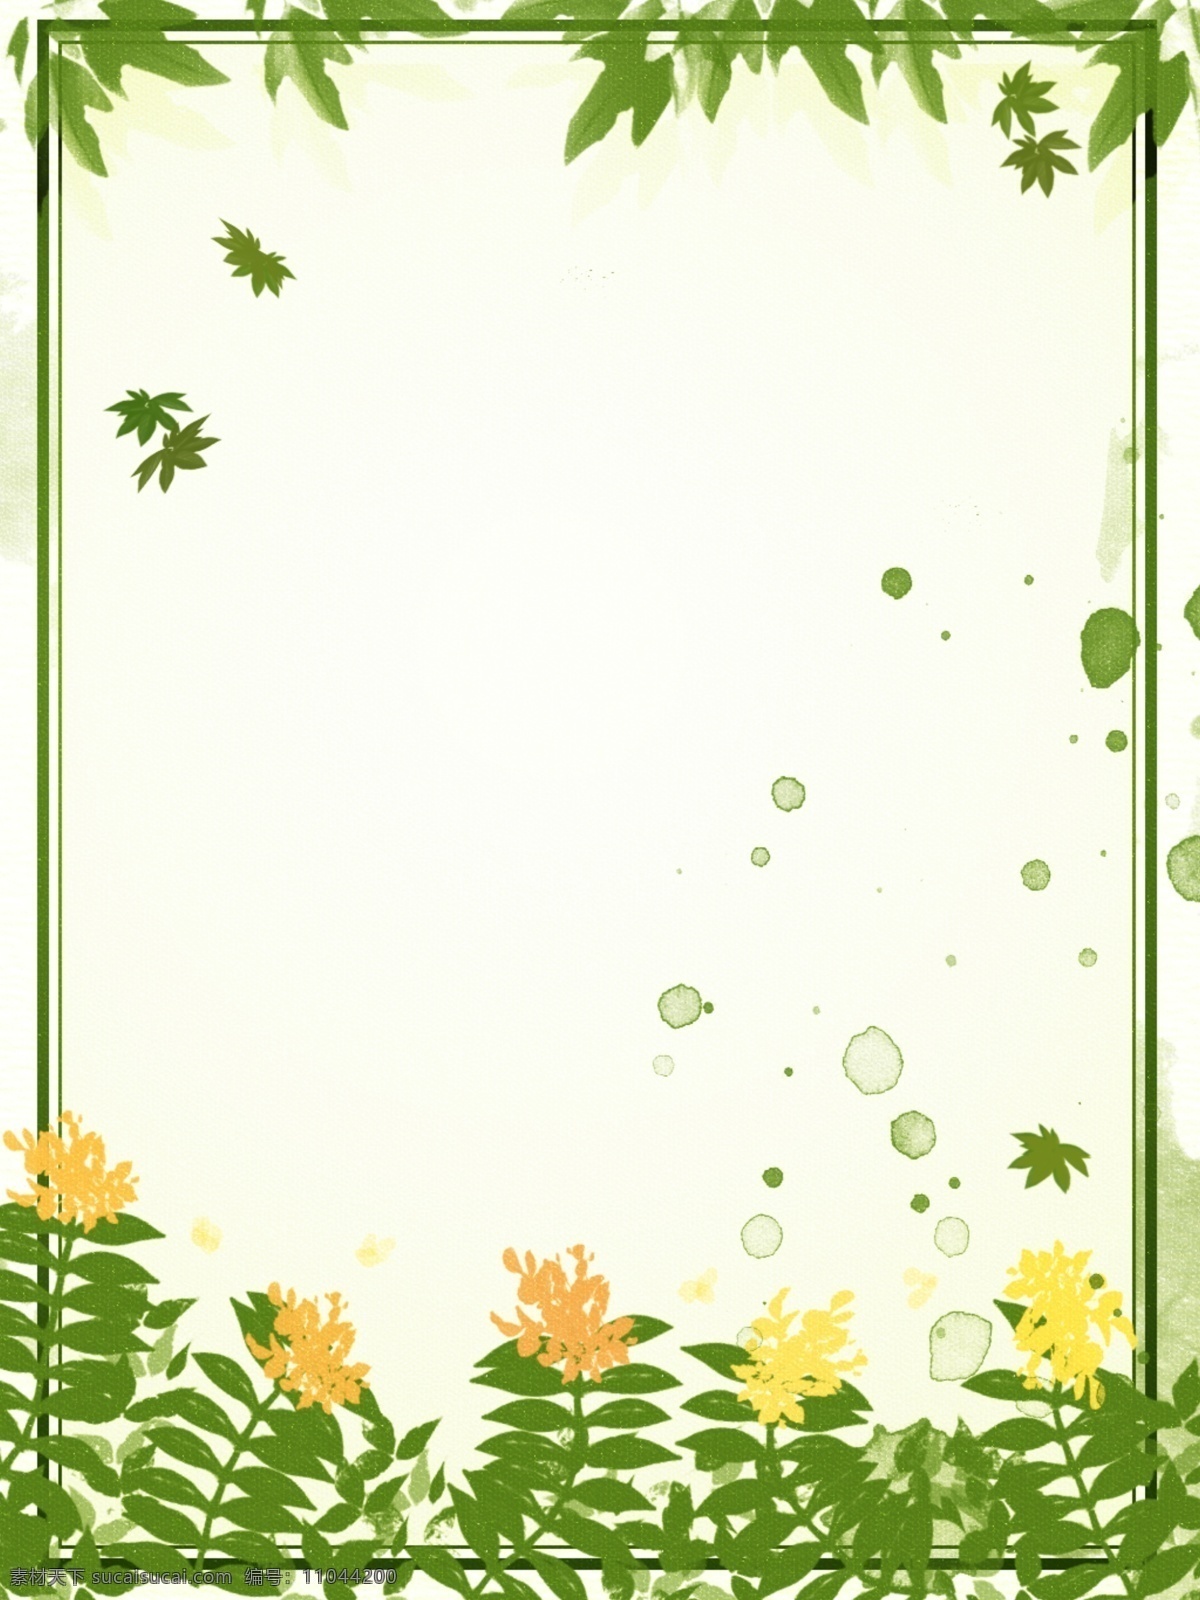 纯 原创 手绘 花朵 绿叶 植物 边框 背景 手绘背景 花朵背景 简约背景 树叶背景 绿色背景 手绘树叶